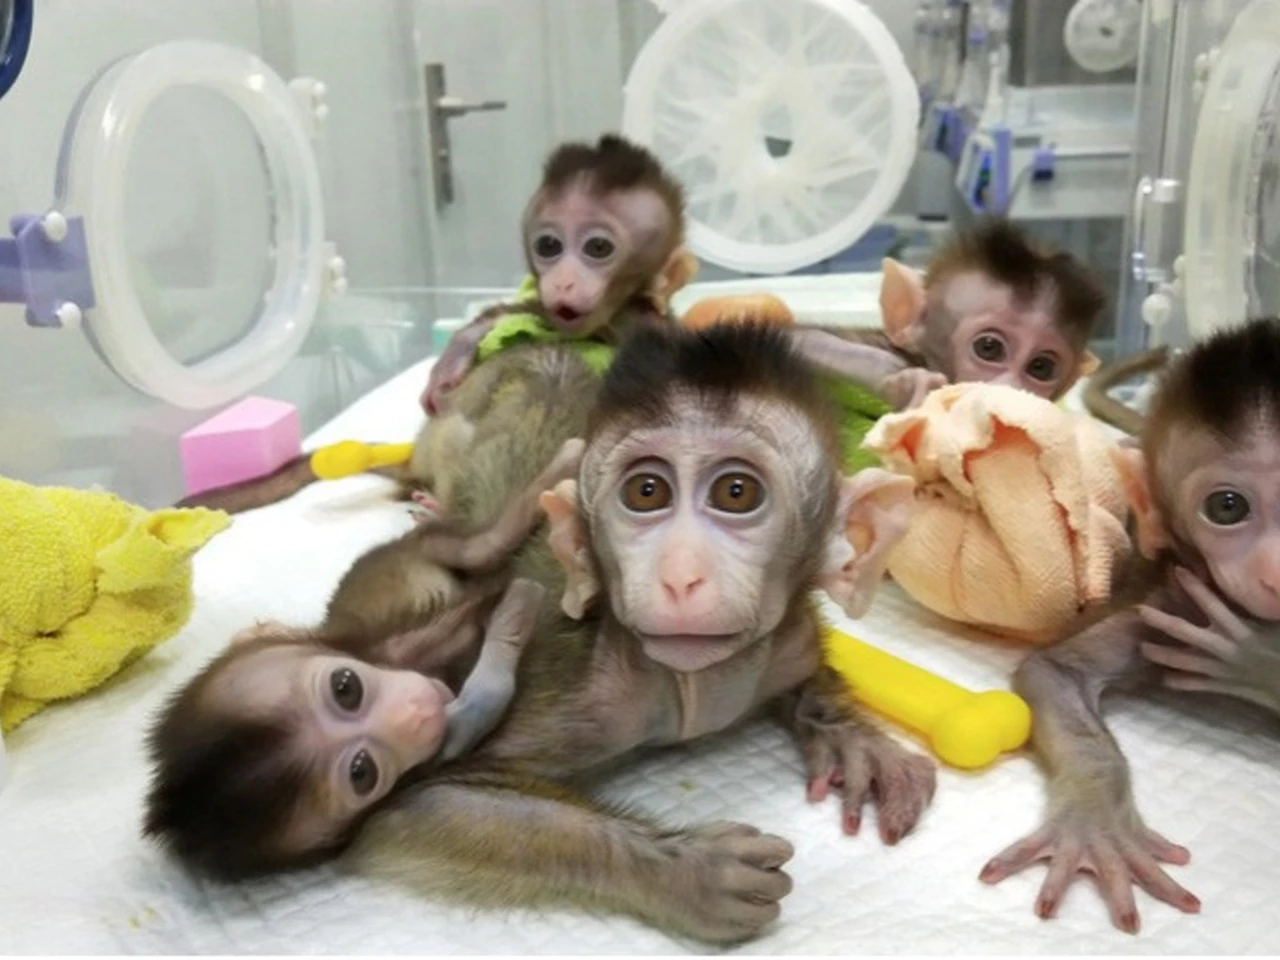 Clonan 5 monos alterados genéticamente para analizar trastornos humanos